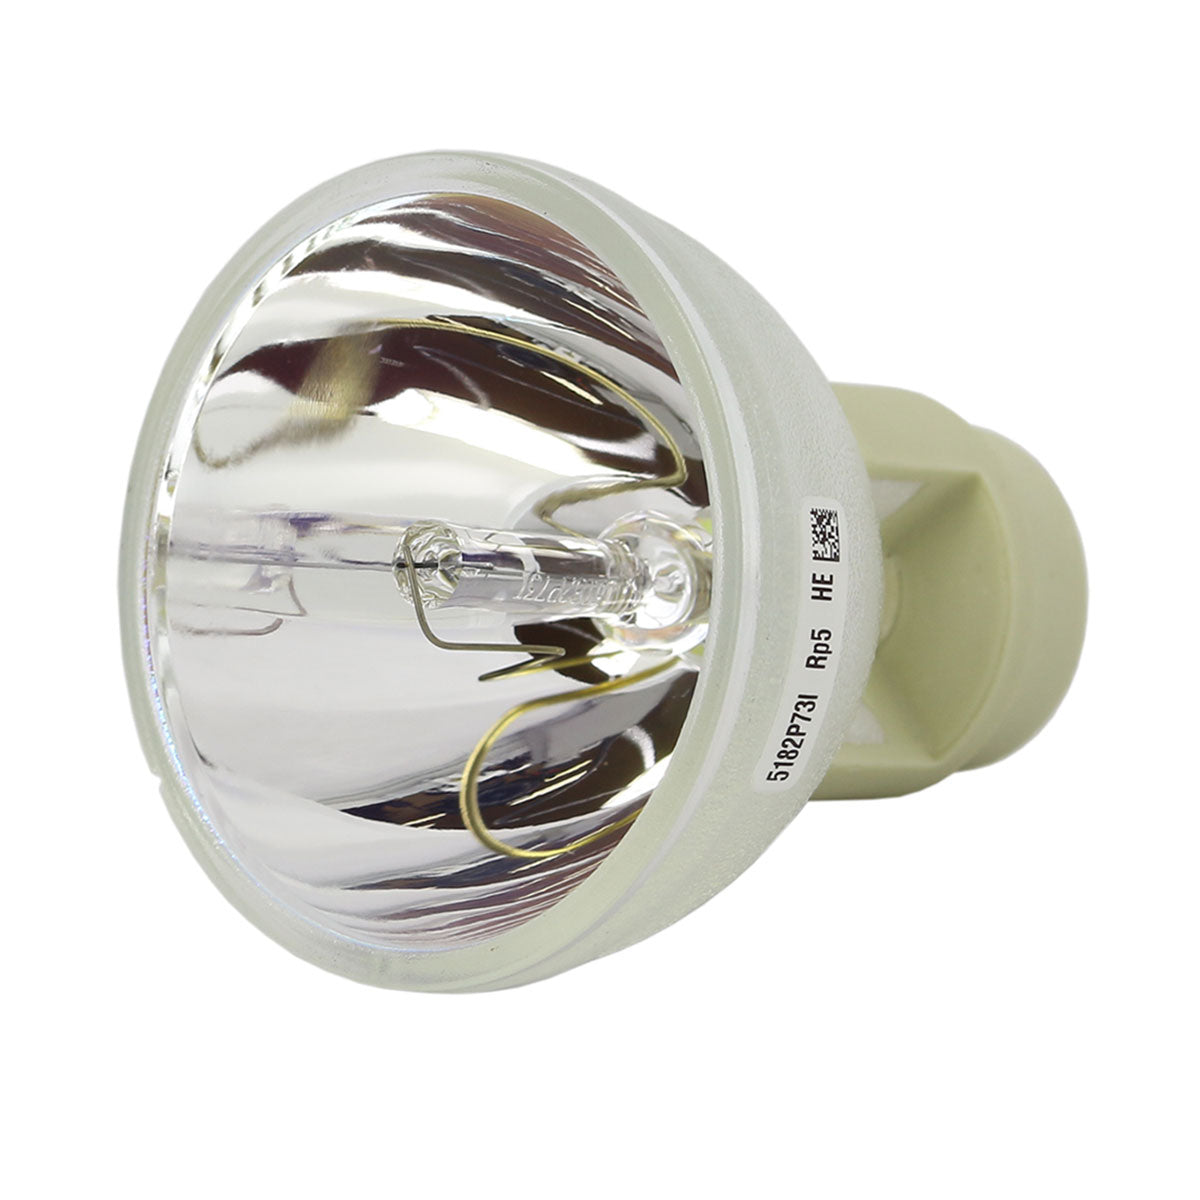 Vivitek 5811120351-SVV Osram Projector Bare Lamp